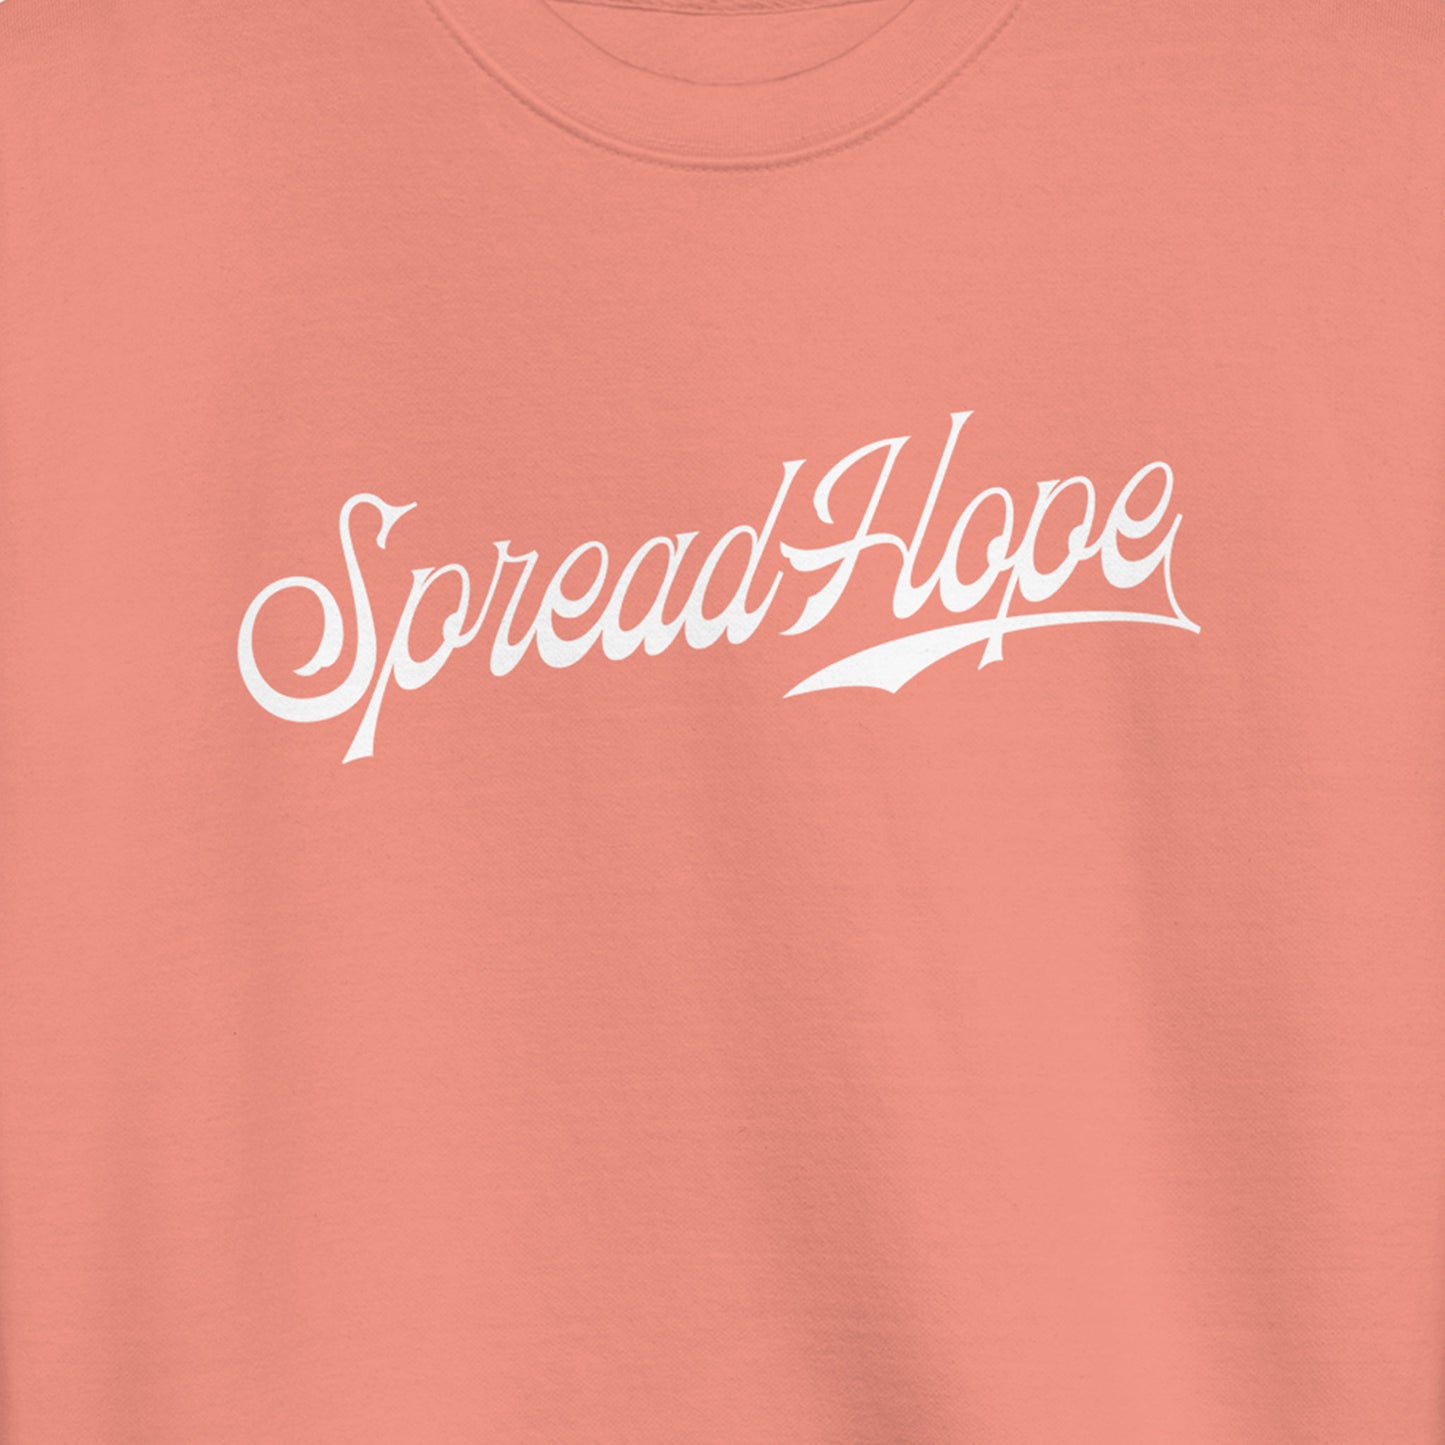 Spread Hope | Sweatshirt - Dusty Rose